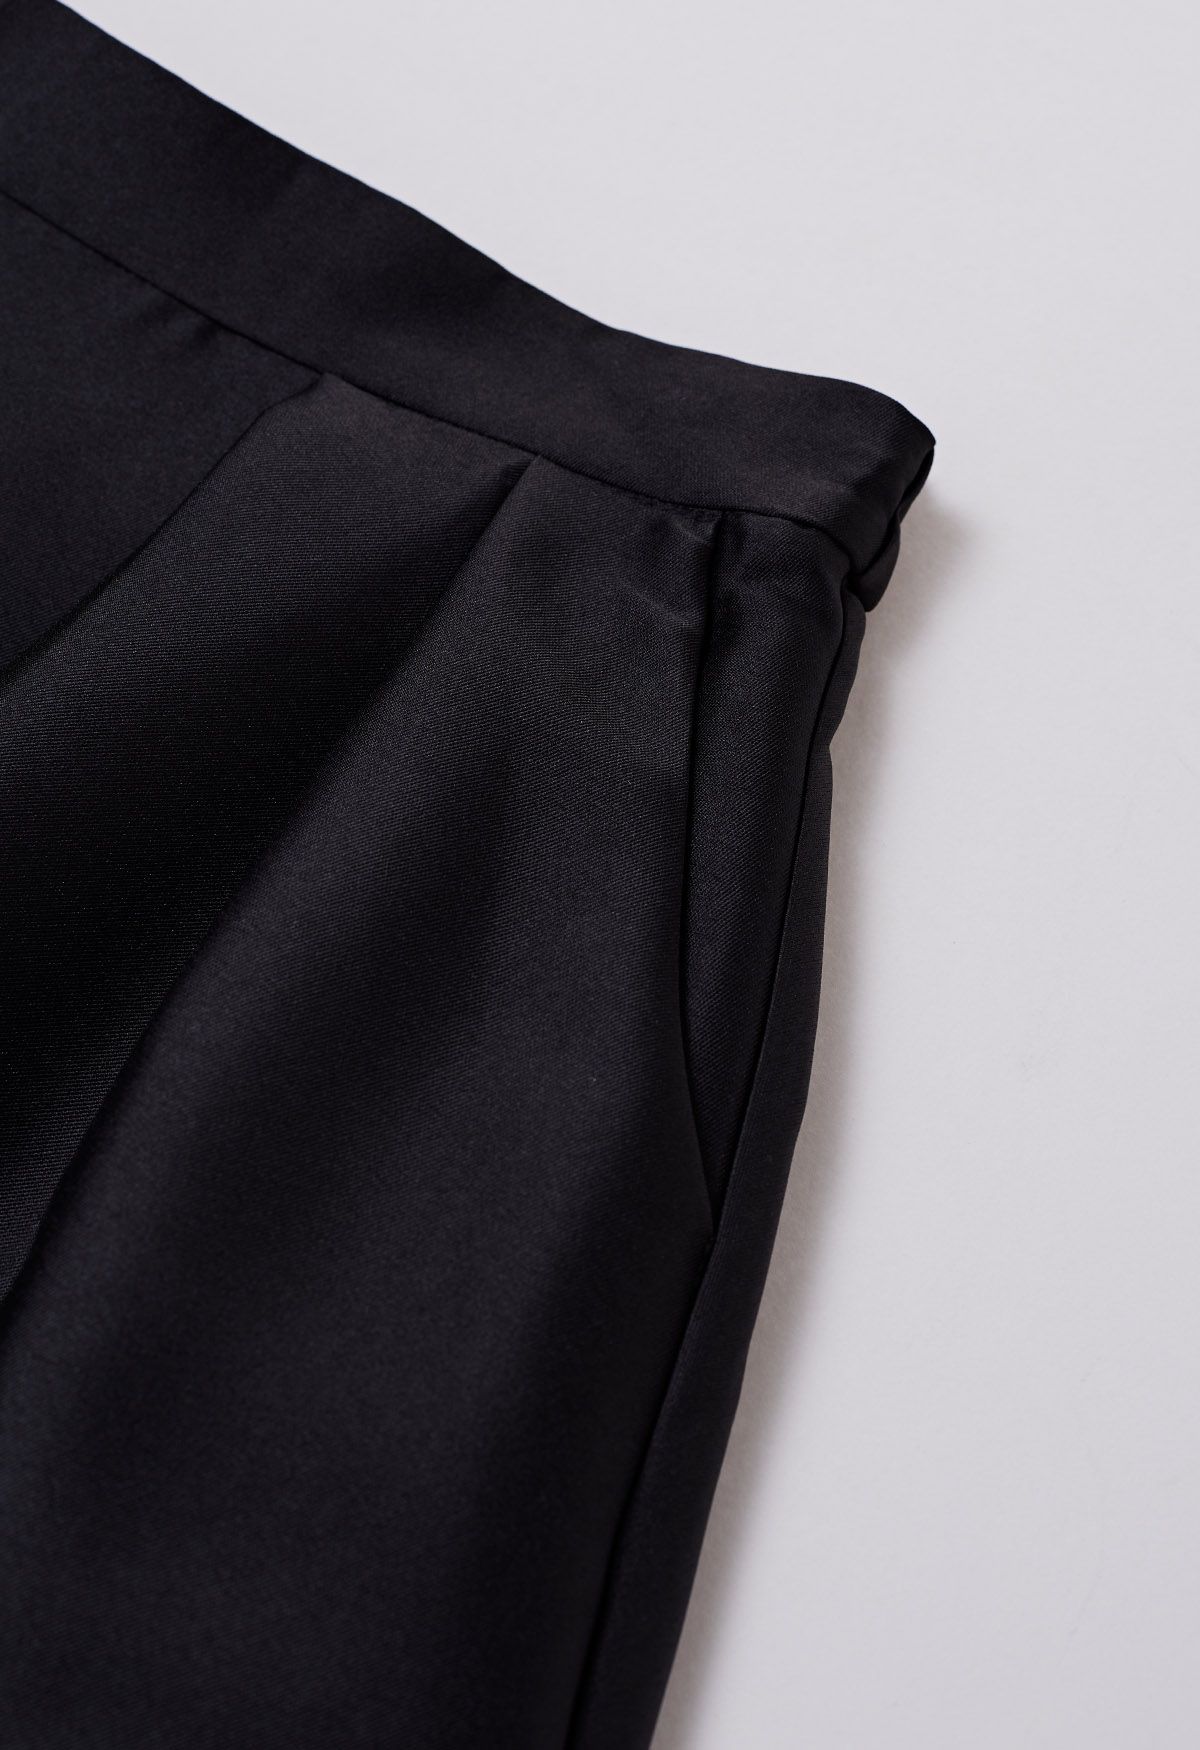 Jupe mi-longue trapèze plissée élégante avec poches latérales en noir